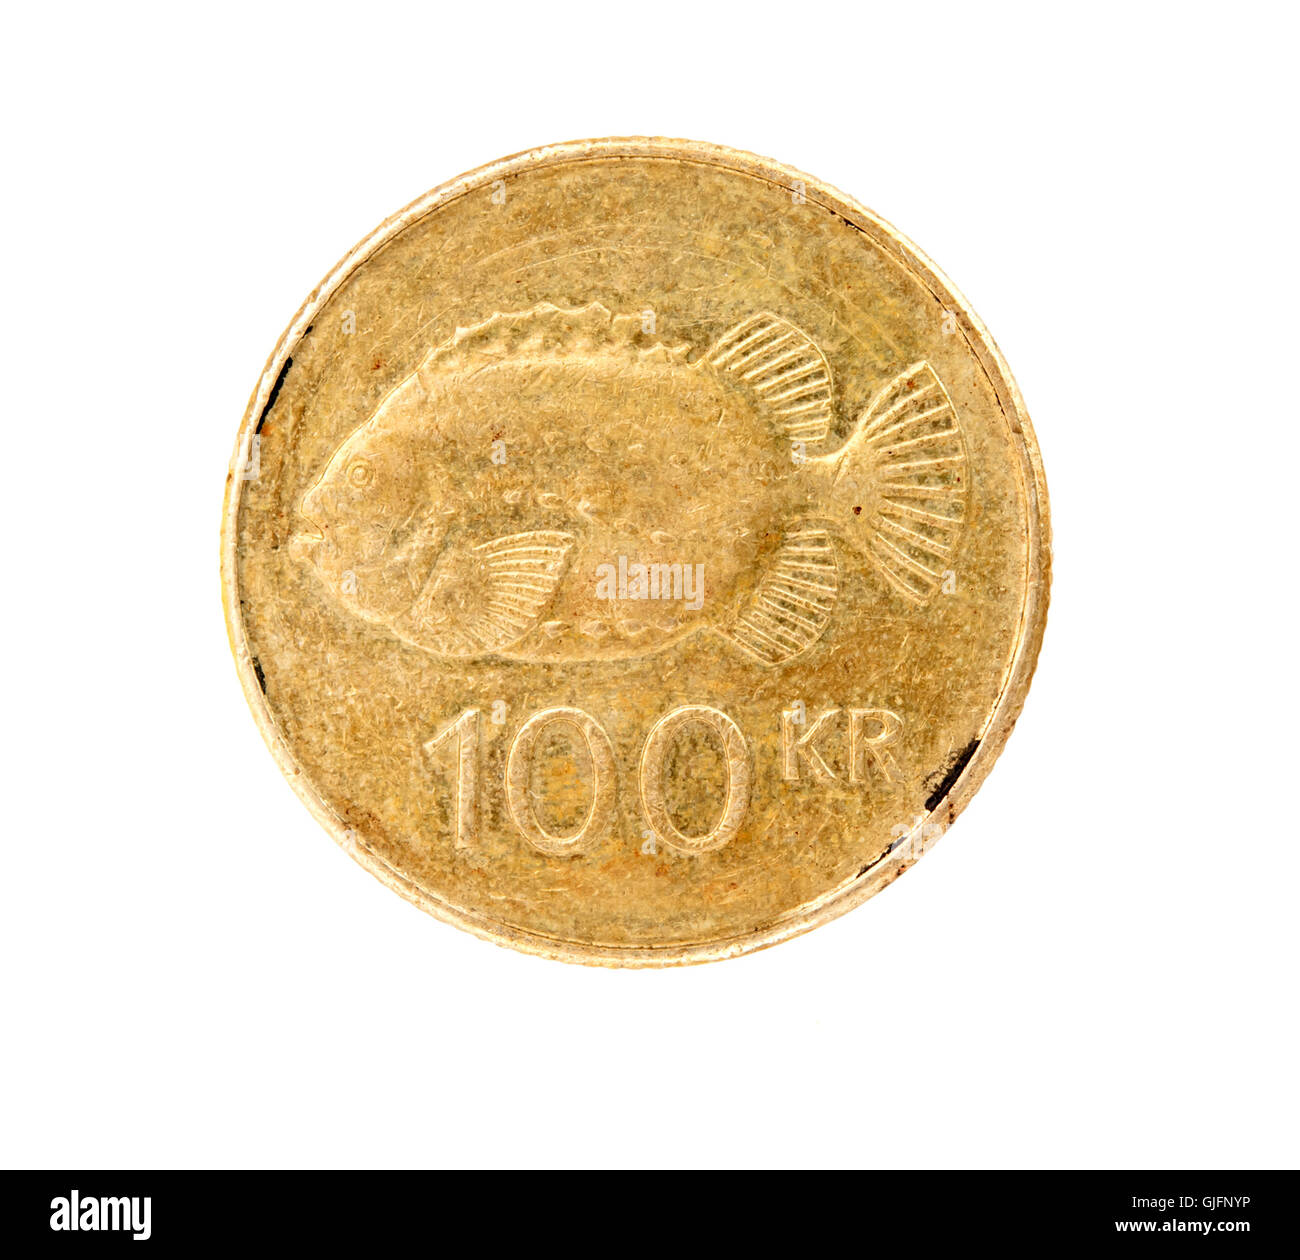 100 couronne islandaise coin isolé sur fond blanc Banque D'Images